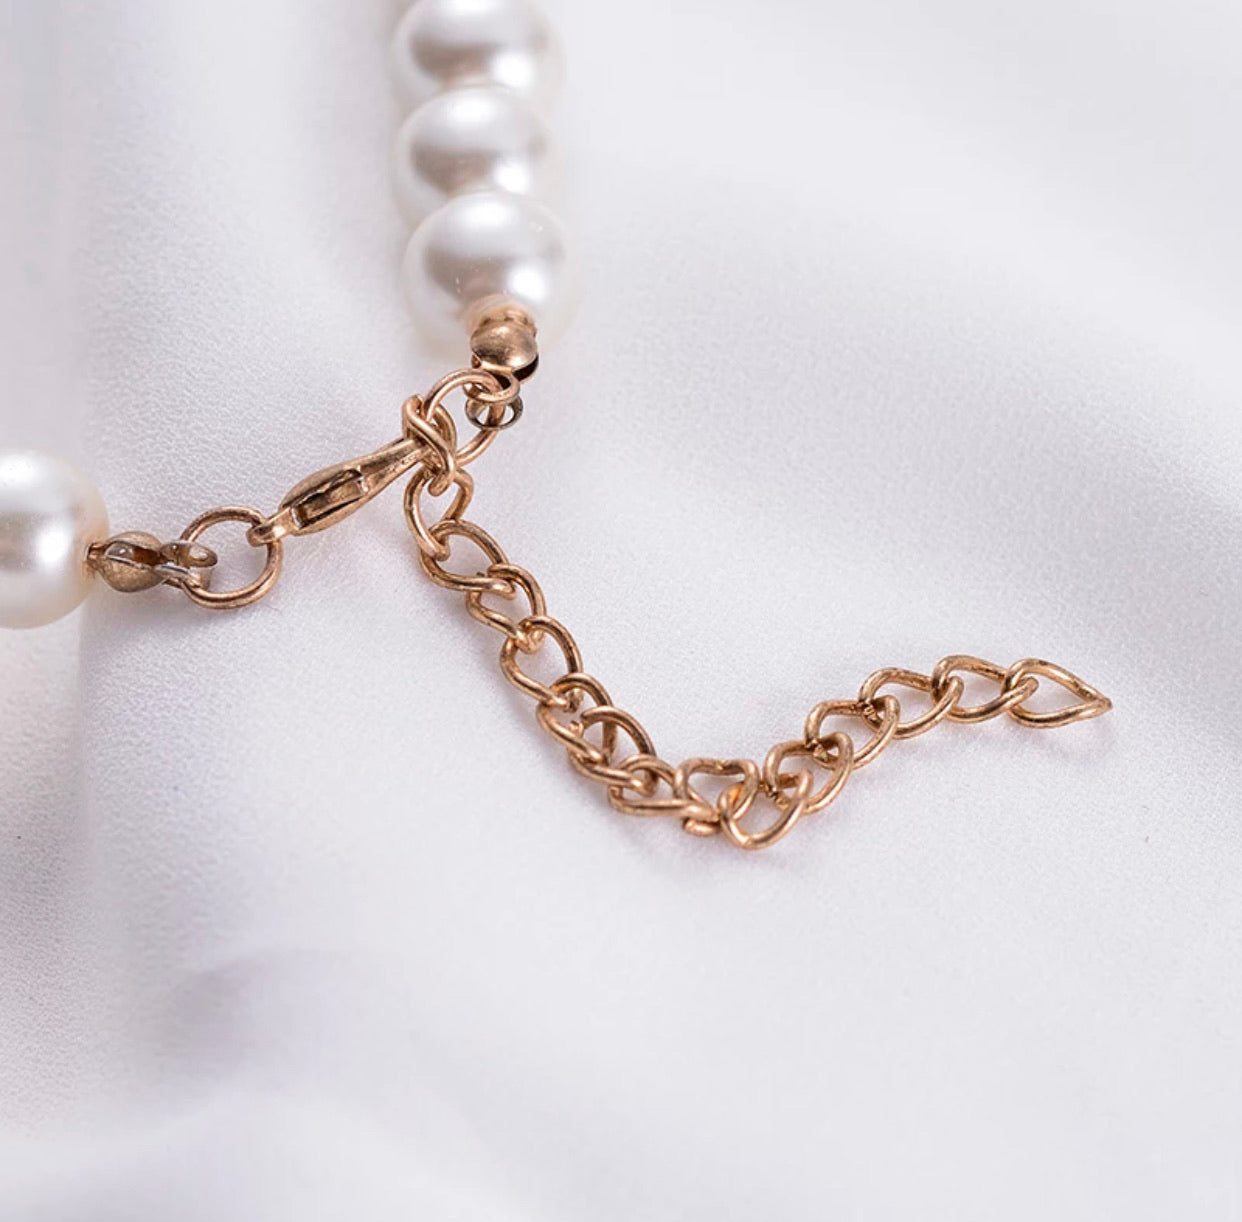 Olivia Wilde wears Harry Styles' 'Golden' pearl necklace